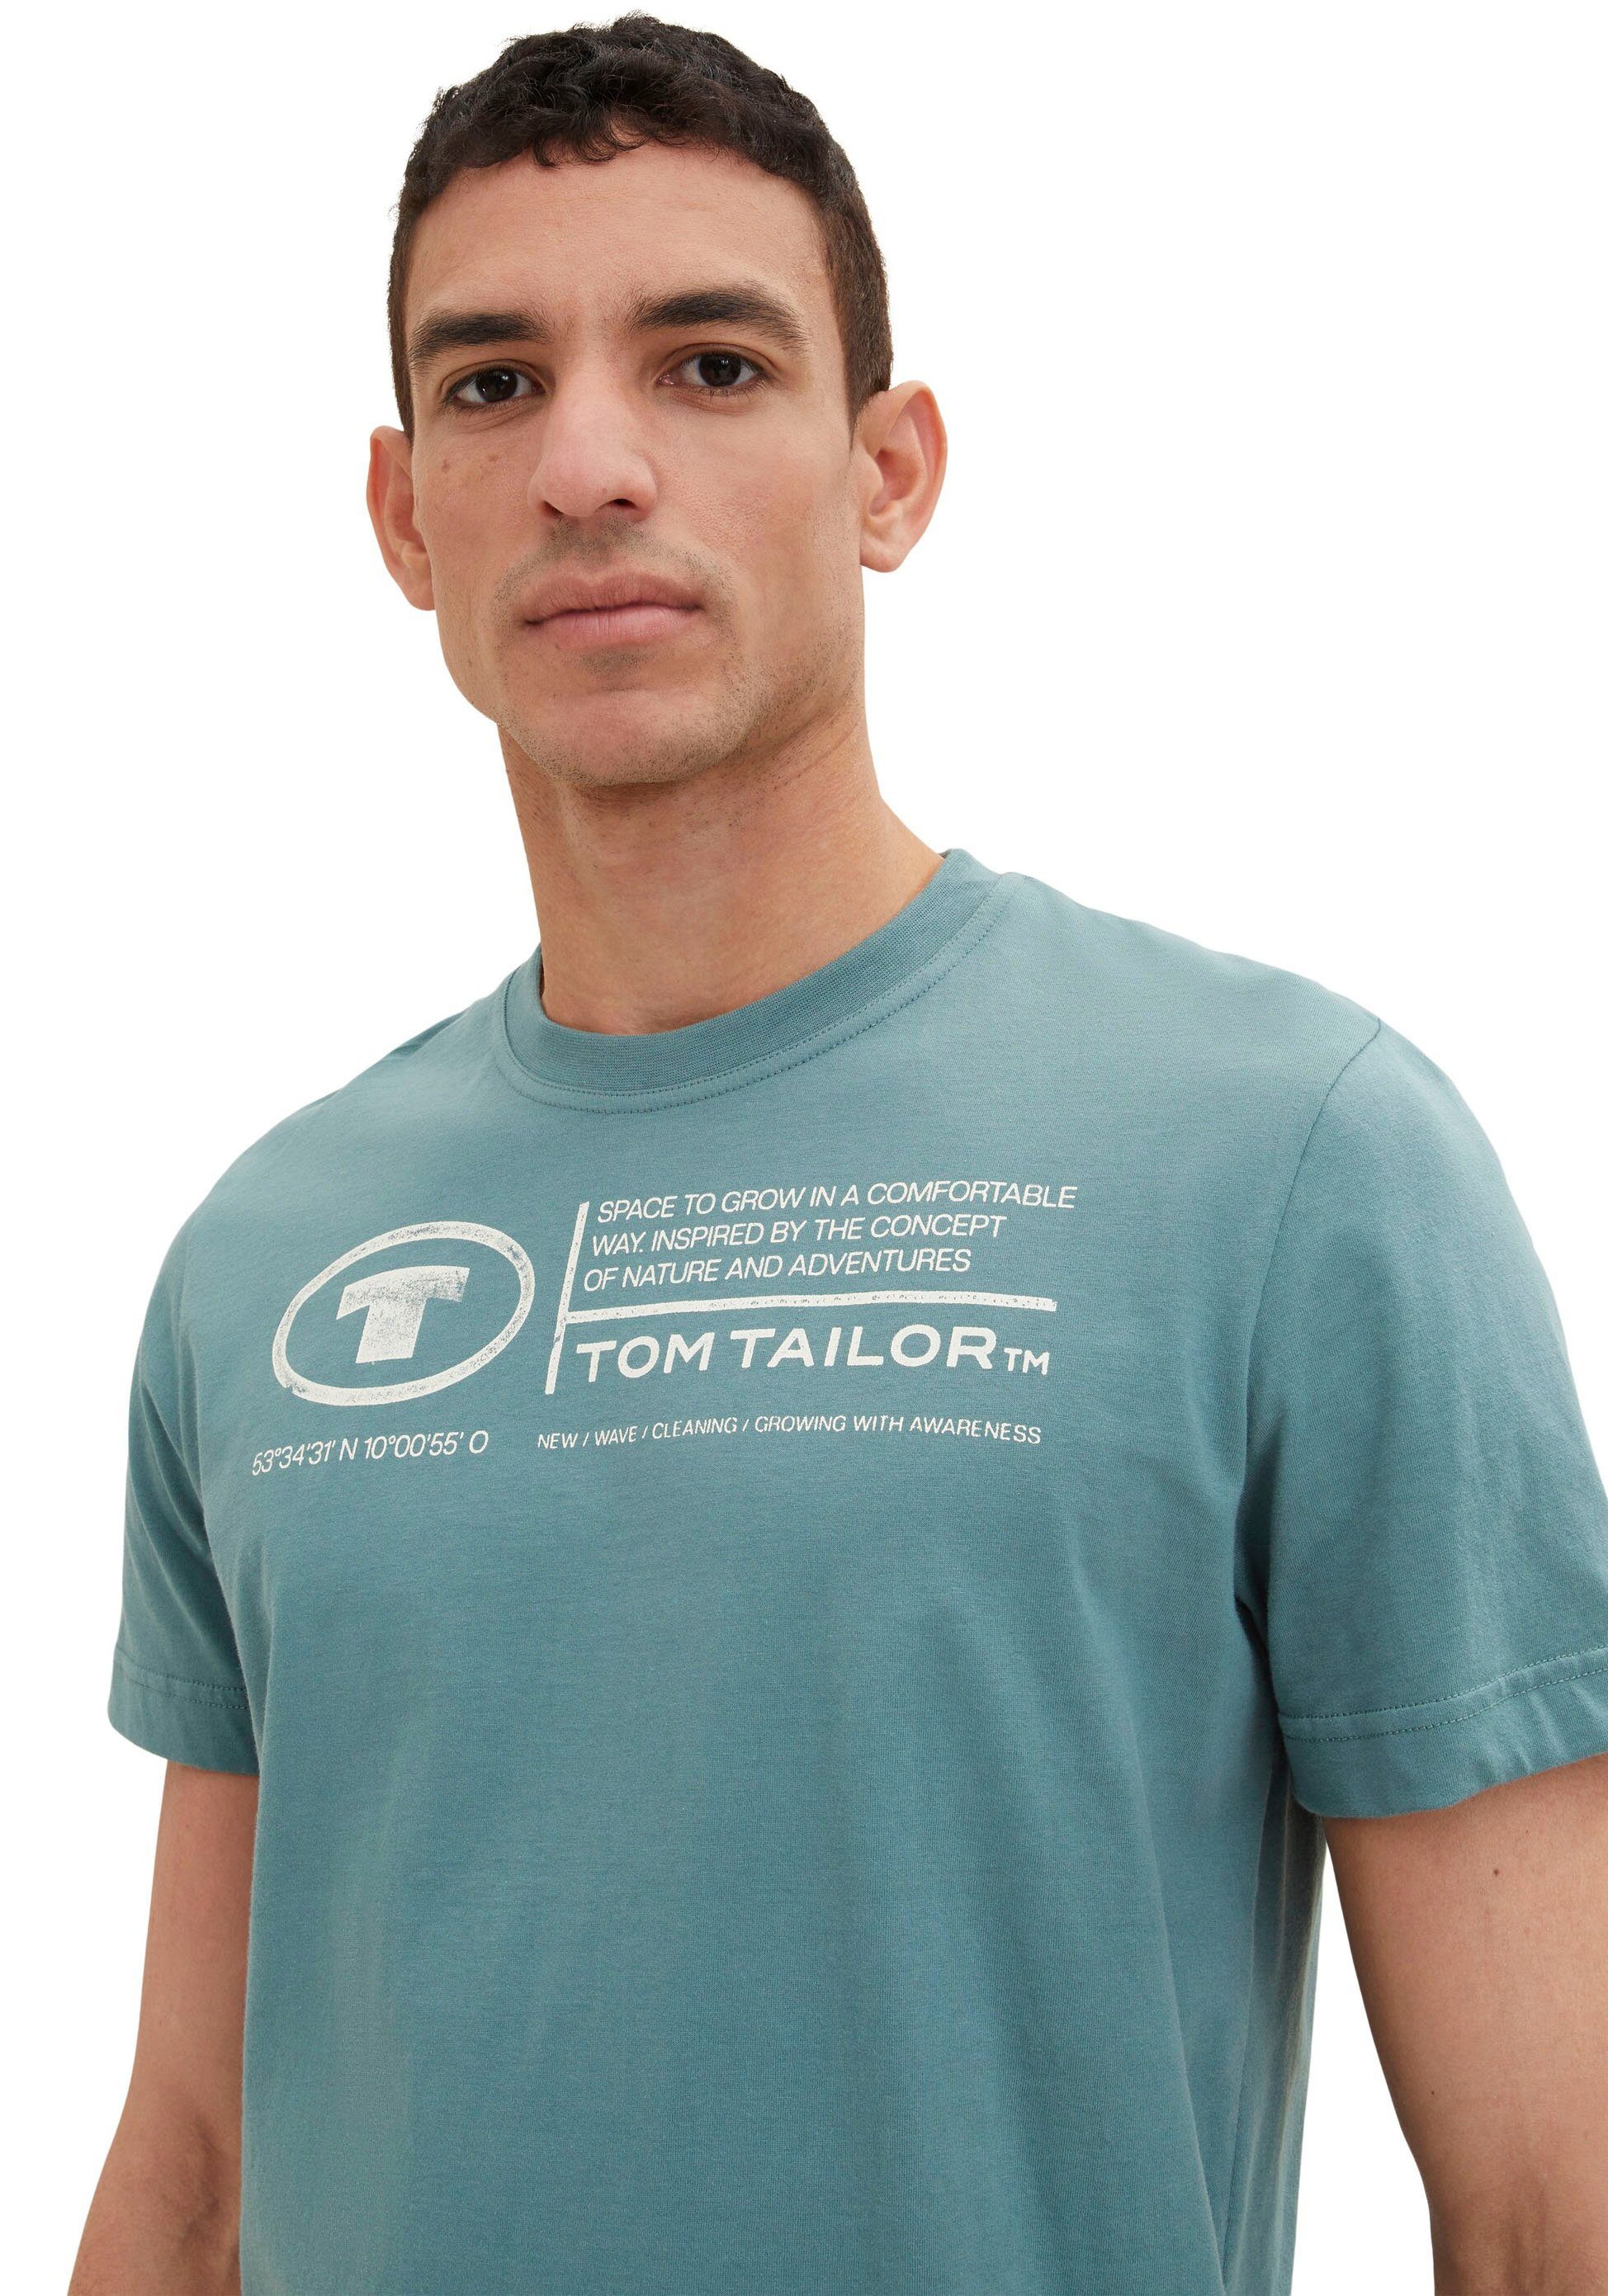 TOM TAILOR Print-Shirt T-Shirt deep Tom Tailor Frontprint bluis Herren